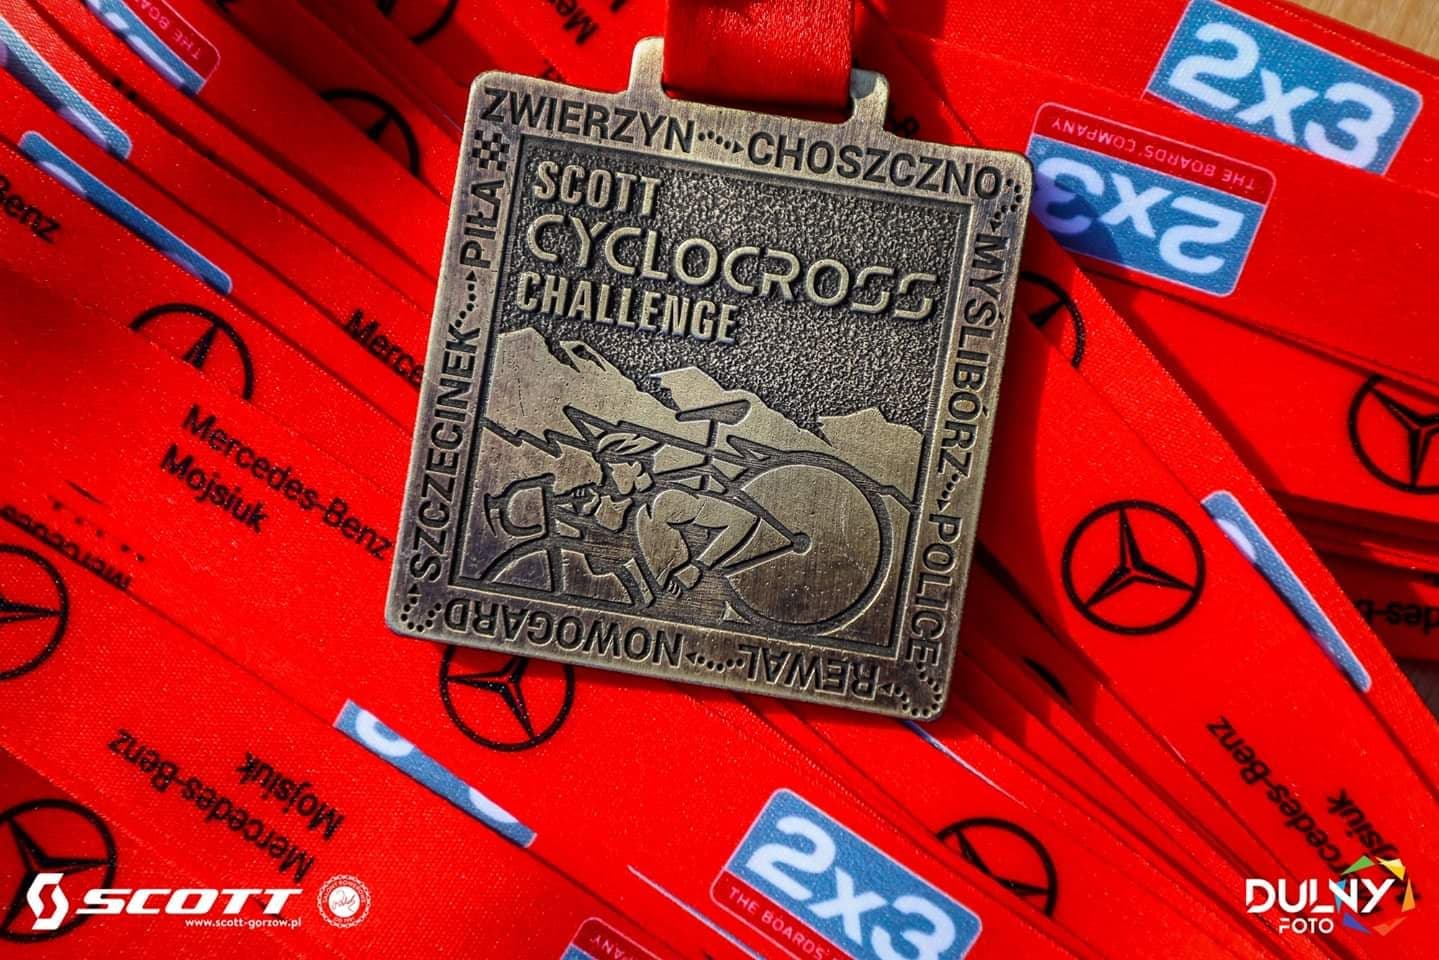 W Zwierzynie wystartował Scott Cyclocross Challenge